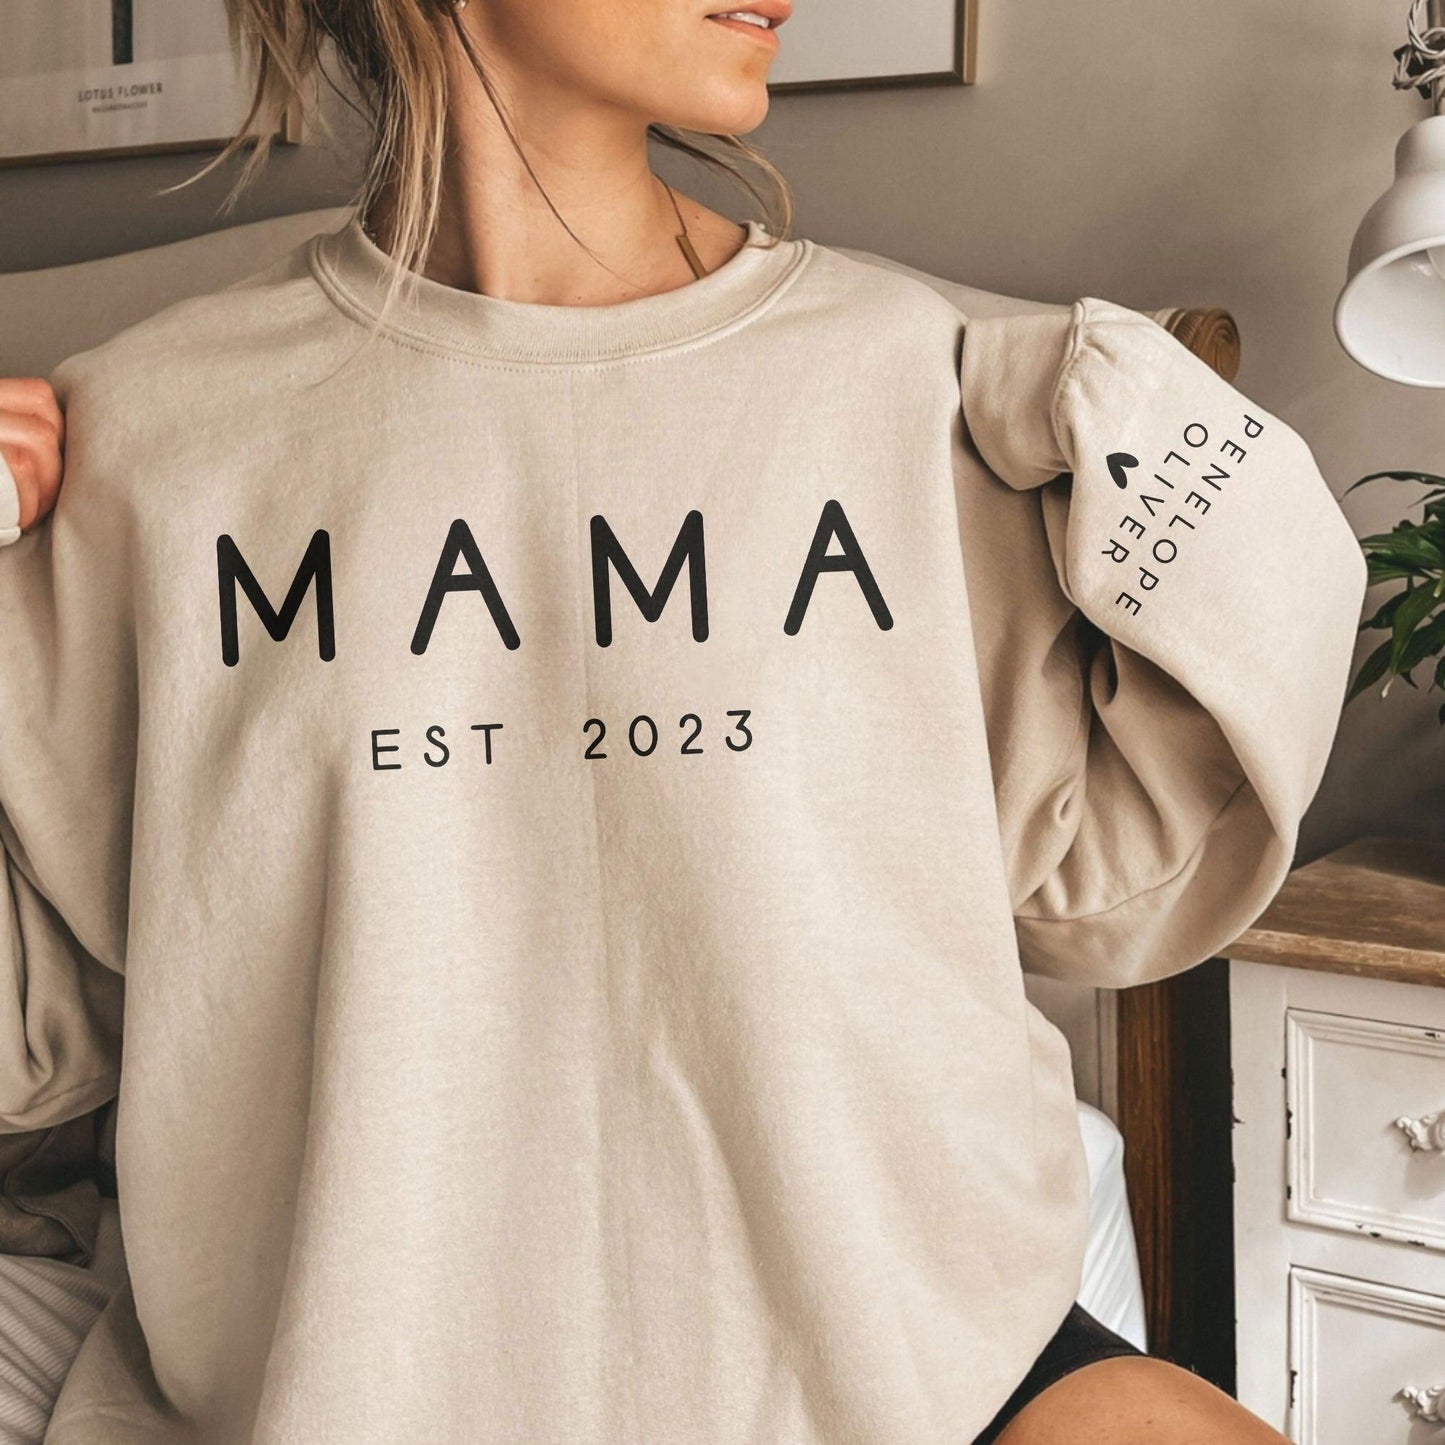 Benutzerdefiniertes Mama Sweatshirt mit Datum und Kindername auf dem Ärmel - GiftHaus